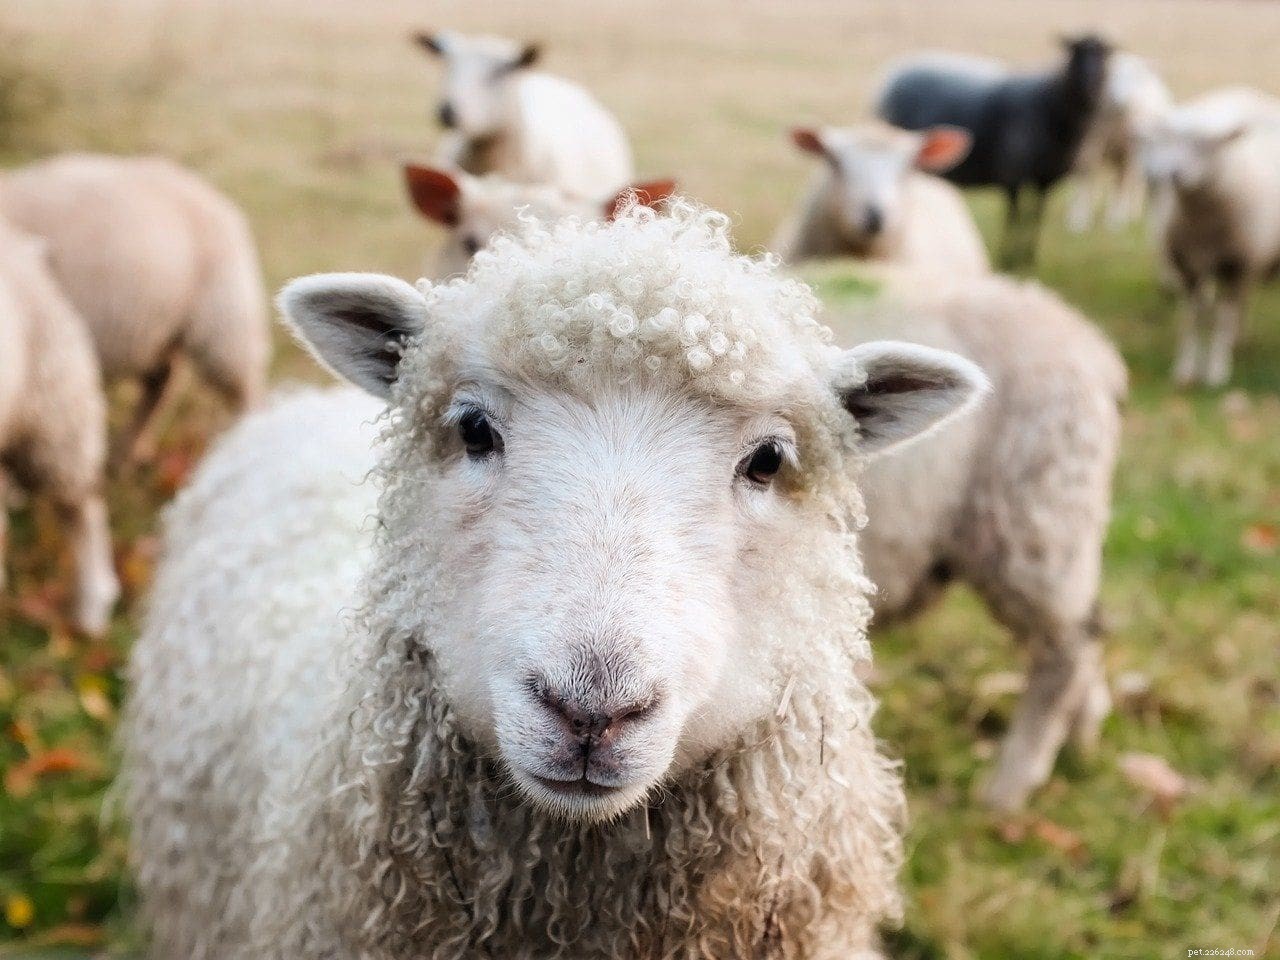 Jsou ovce dobrými mazlíčky? Co potřebujete vědět!